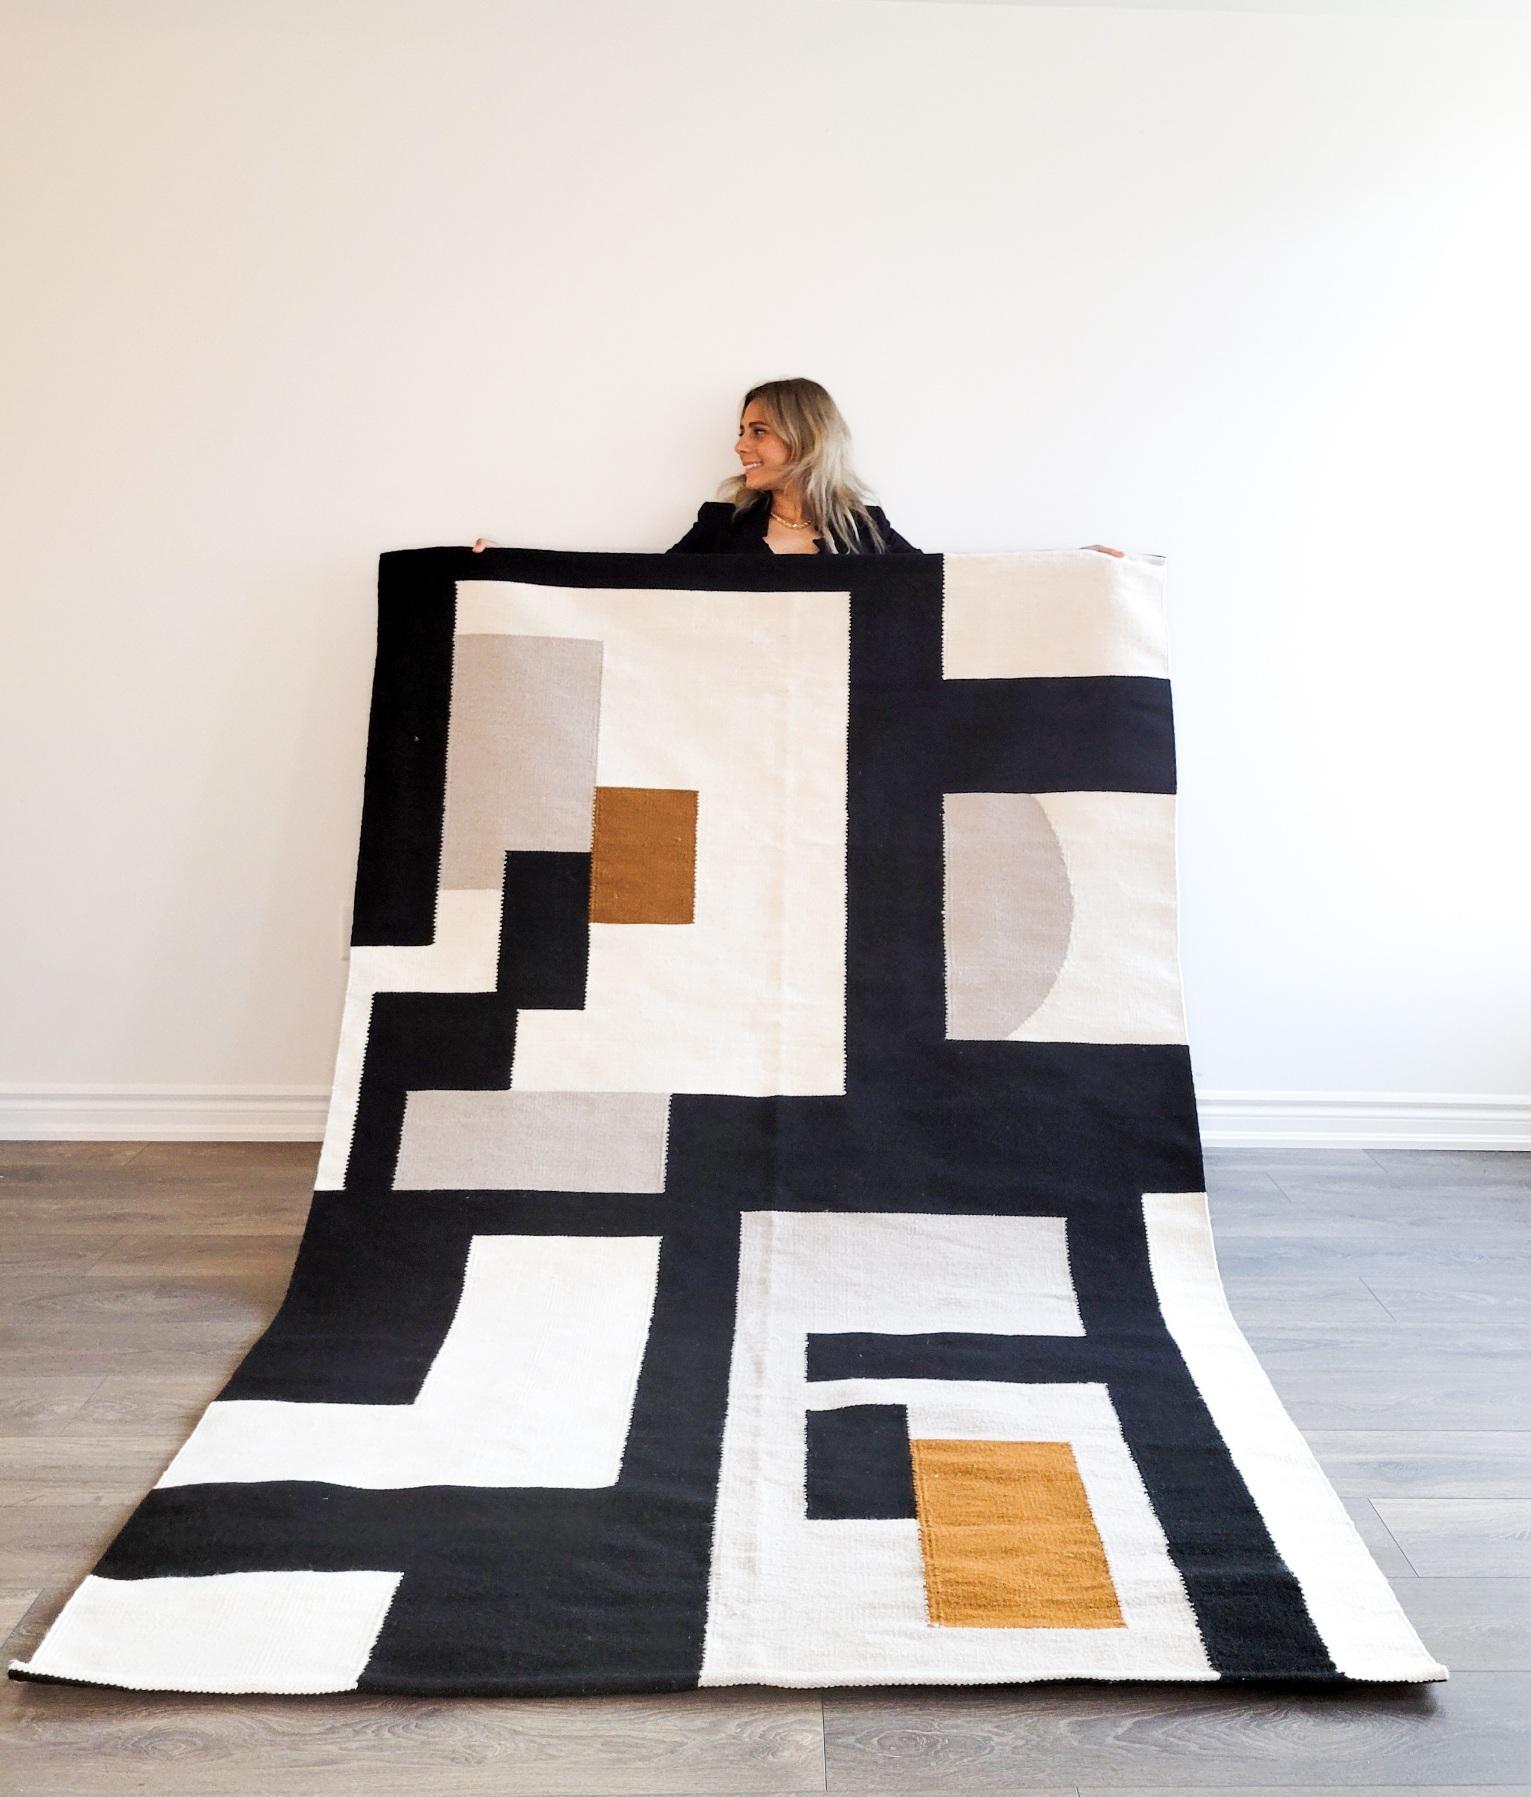 Wir stellen unser neuestes Teppichdesign vor, ein atemberaubendes Meisterwerk, inspiriert von der Essenz des zeitgenössischen Minimalismus. Dieser Teppich fängt mühelos die Essenz des modernen Designs ein und bietet eine harmonische Mischung aus